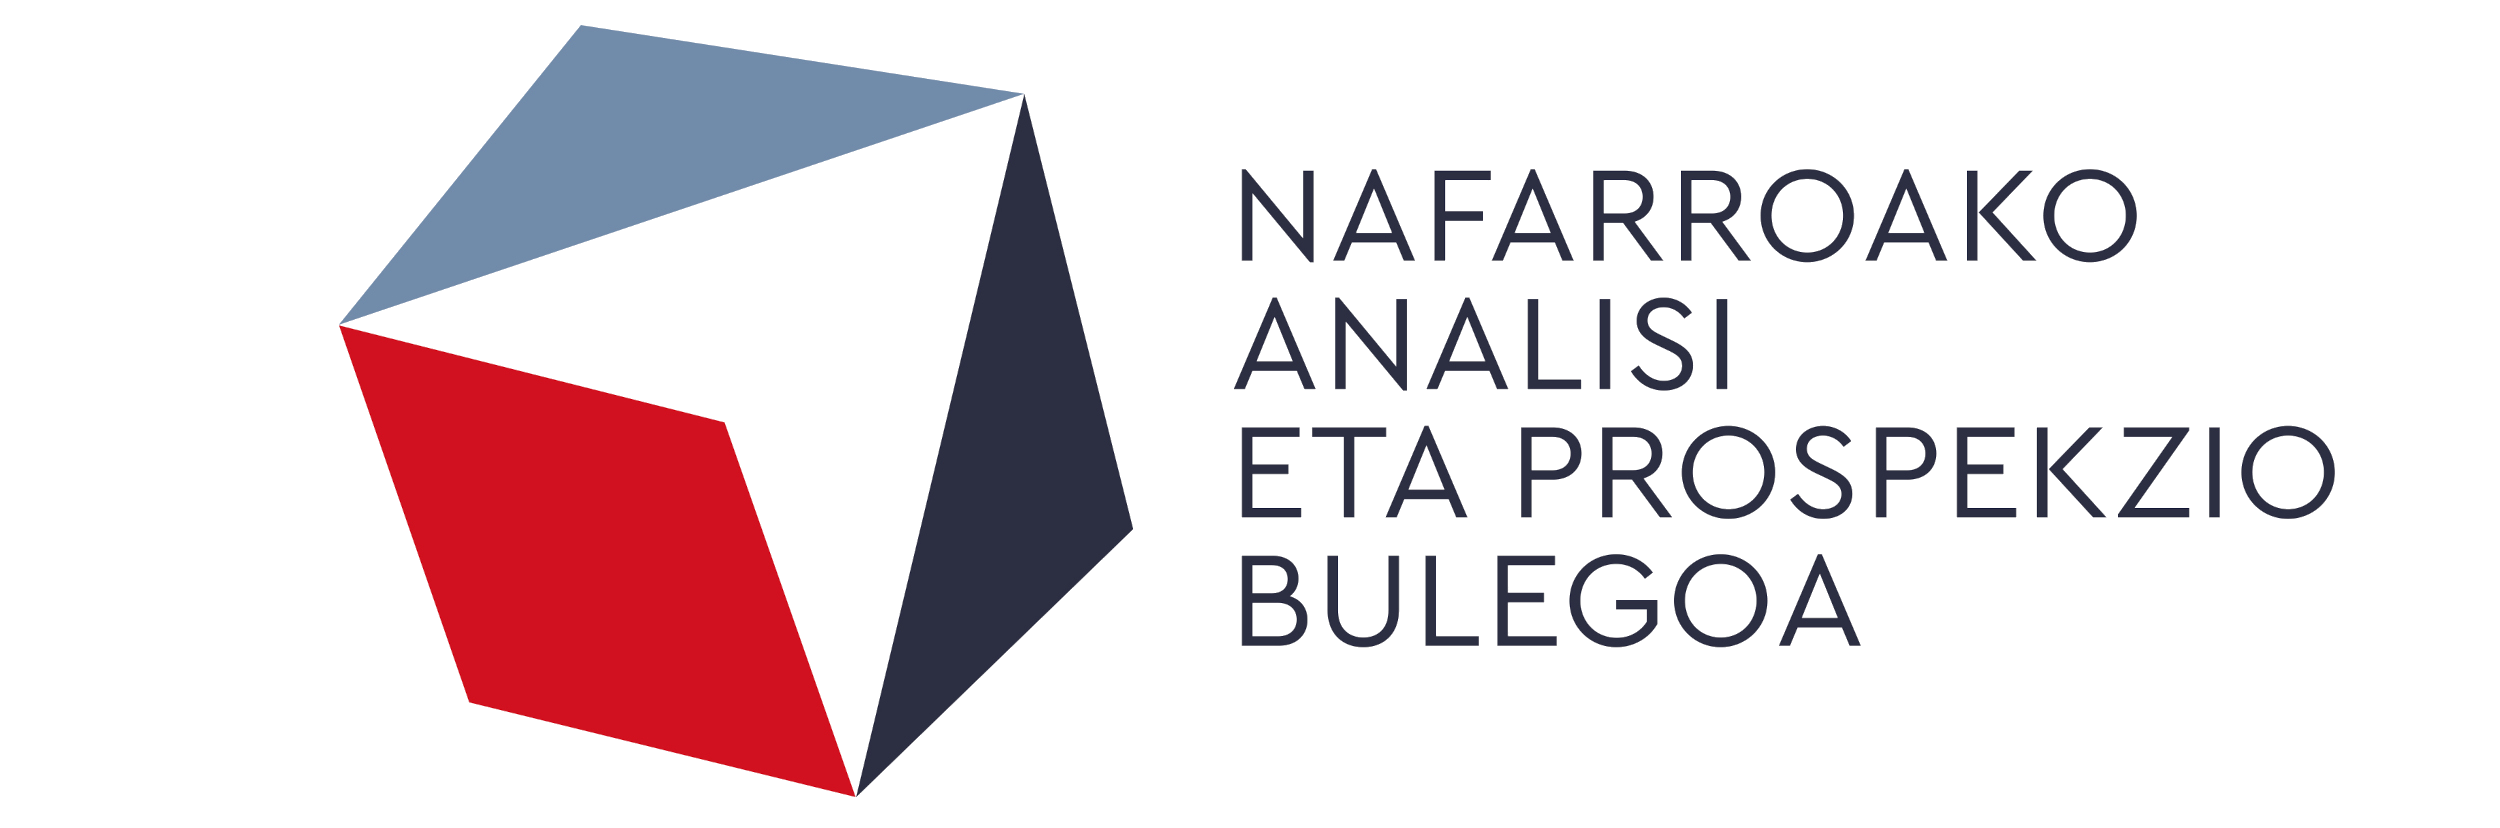 Nafarroako Analisi eta Prospekzio Bulegoaren logotipoa